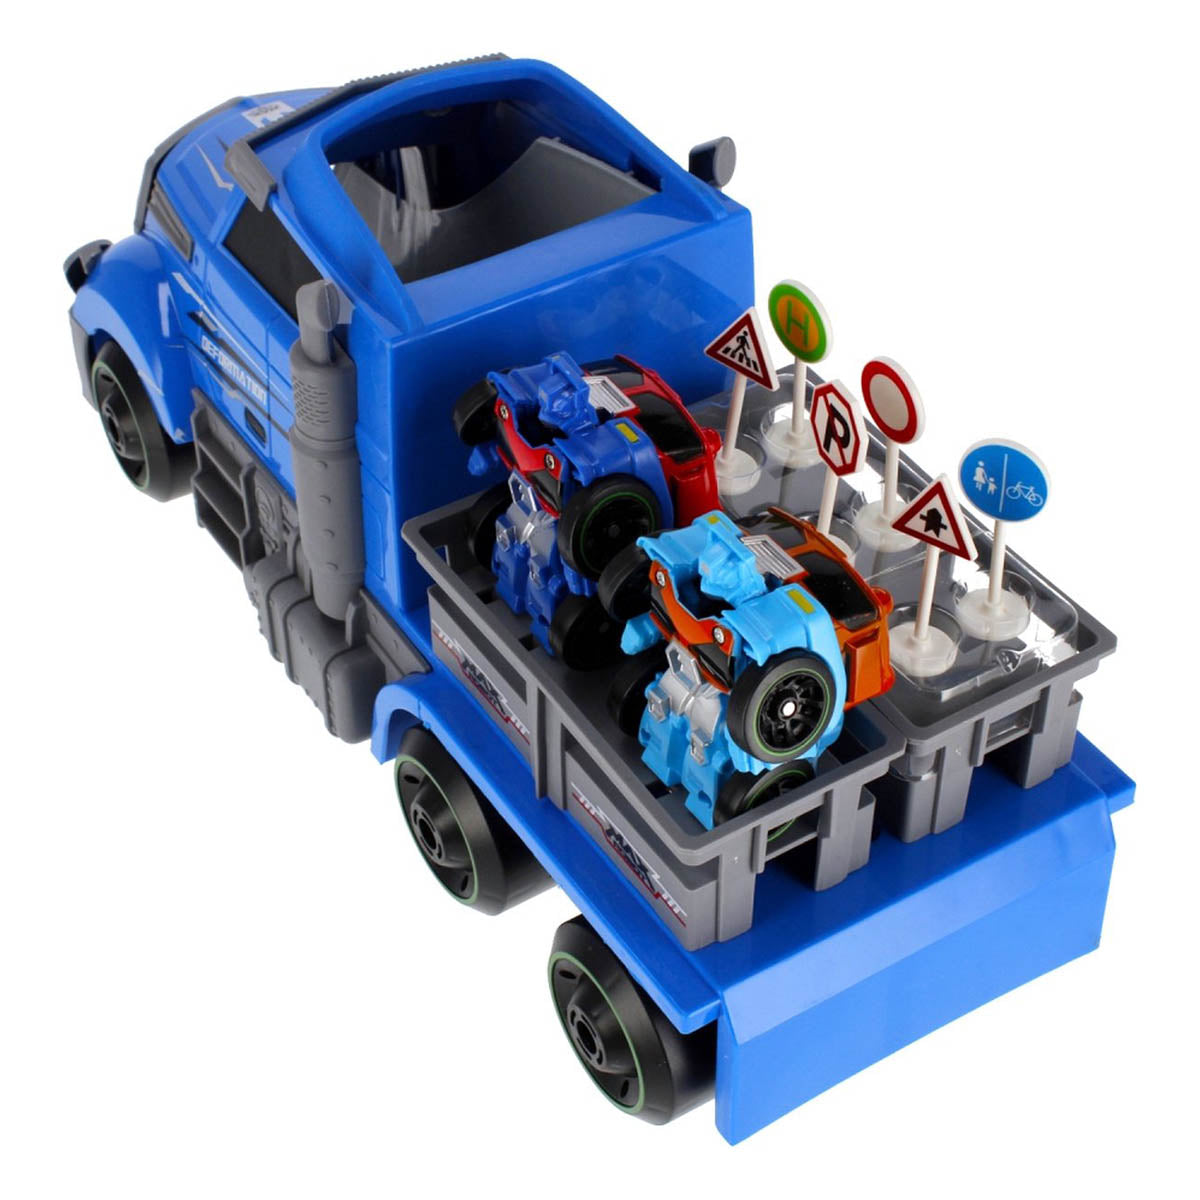 Ariko Truck launcher met 2 stuks robot auto's - inclusief verkeersborden